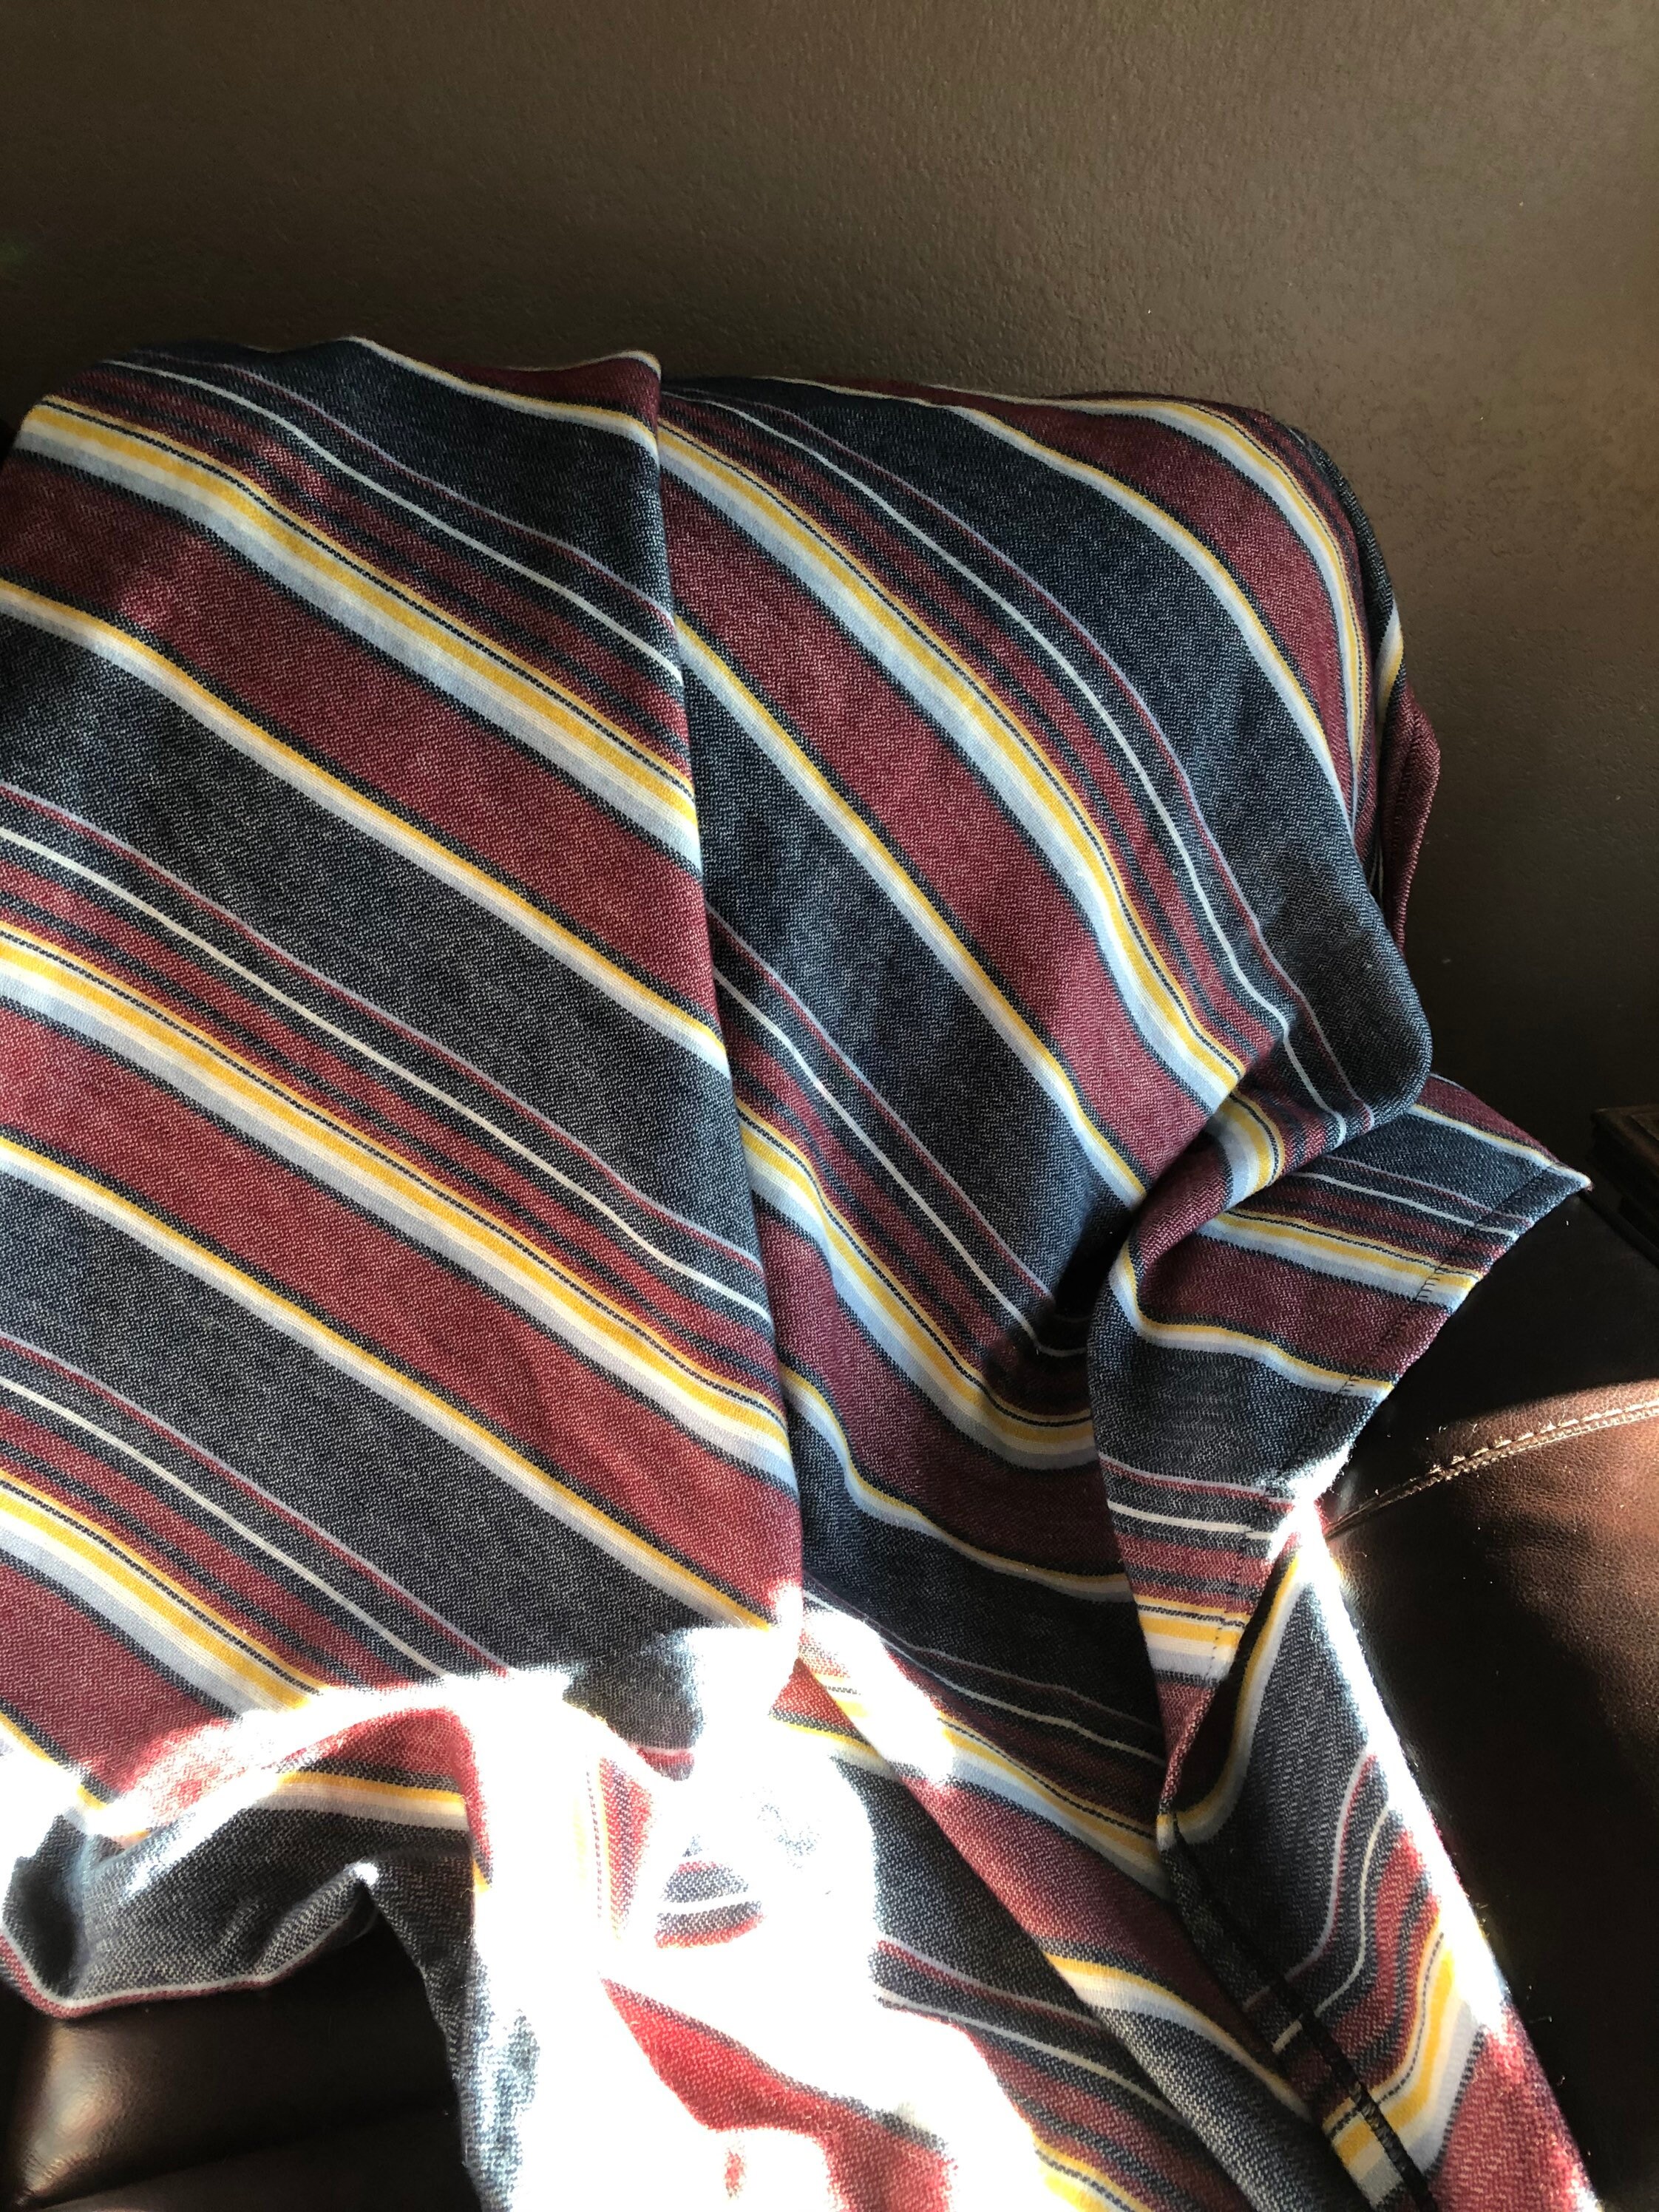 Southwestern Throw Blanket Baby Blanket Sofa Blanket | Etsy